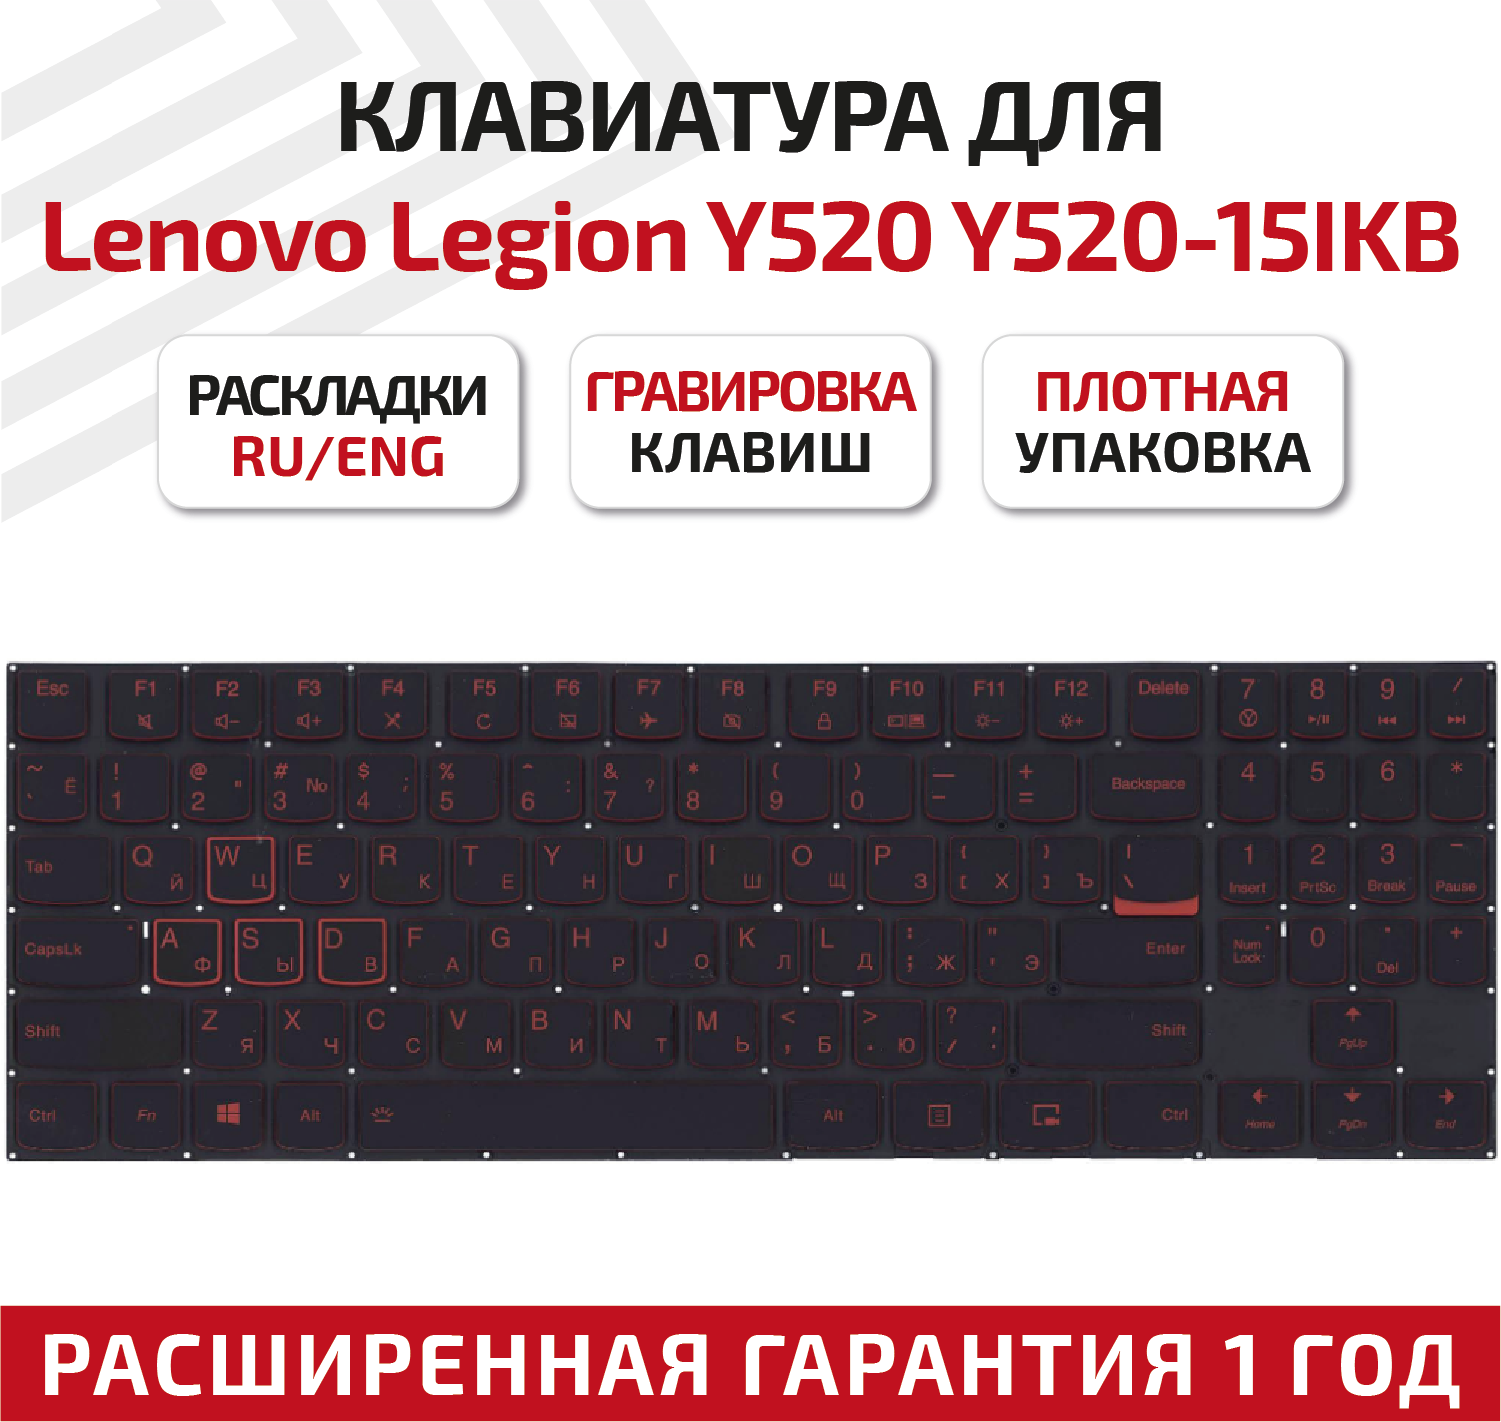 Клавиатура (keyboard) PC5YB-US для ноутбука Lenovo Legion Y520, Y520-15IKB, Y720, Y720-15IKB, R720, R720-15IKB, Y520-15IKBM, черная без рамки